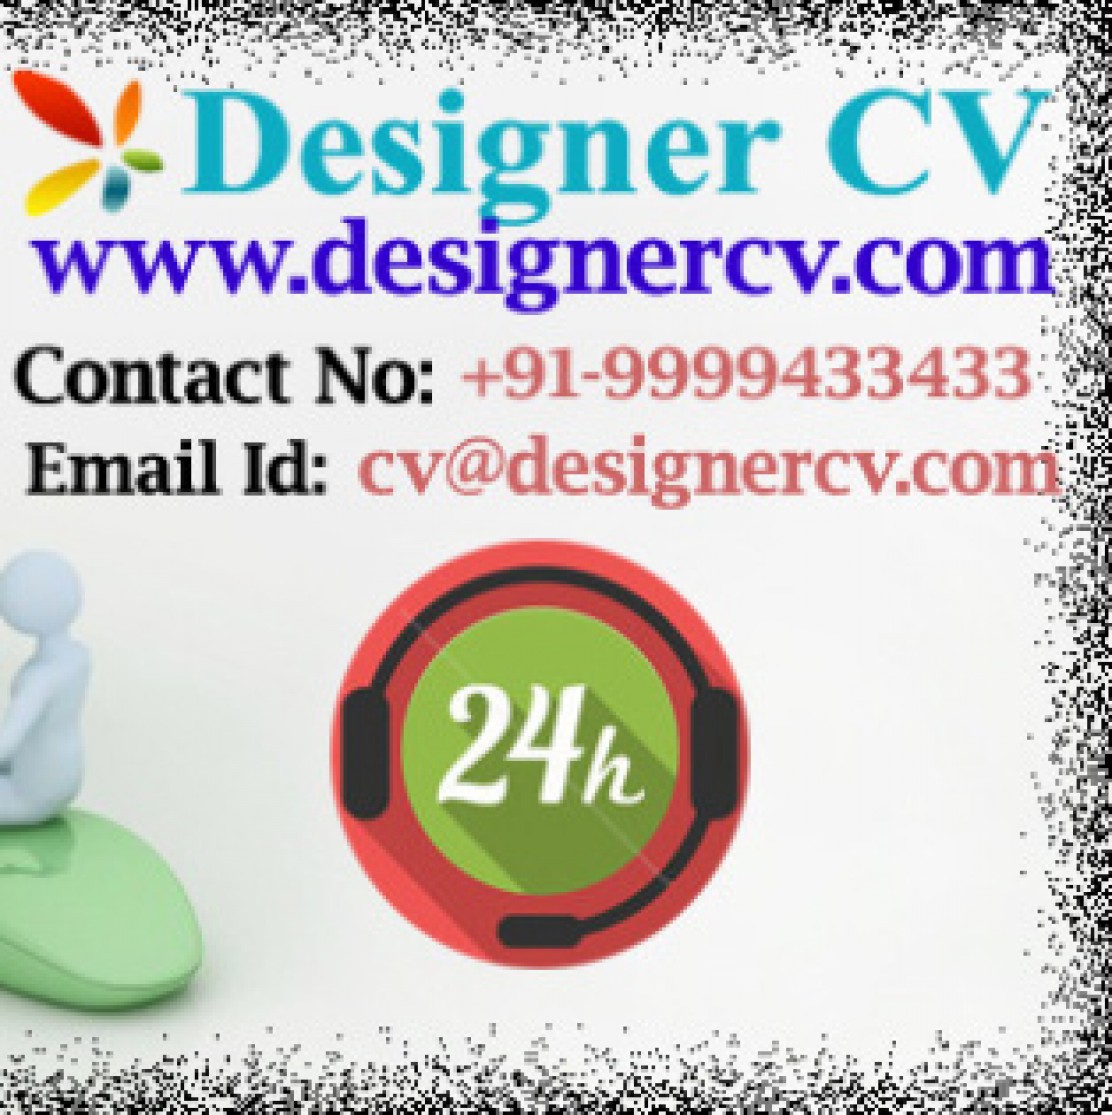 cv designer cv cv designer international cv online cv online ...